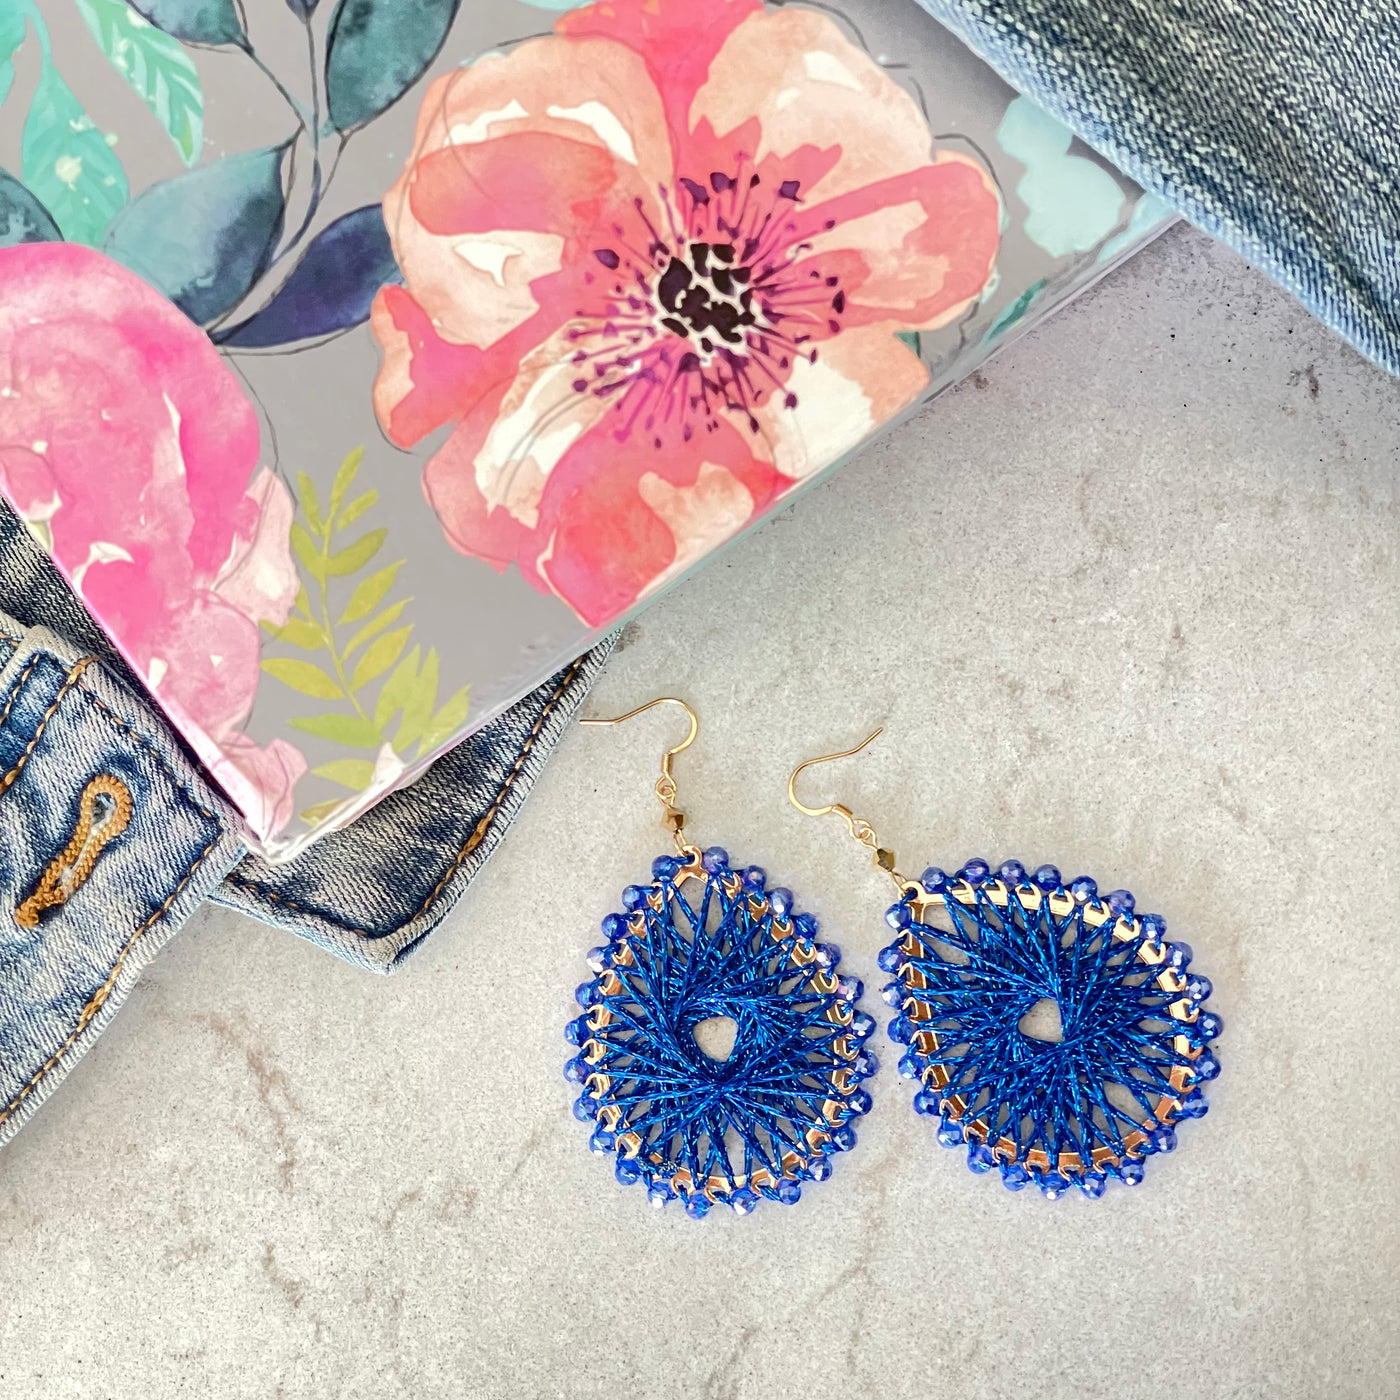 Ohana royal blue earrings